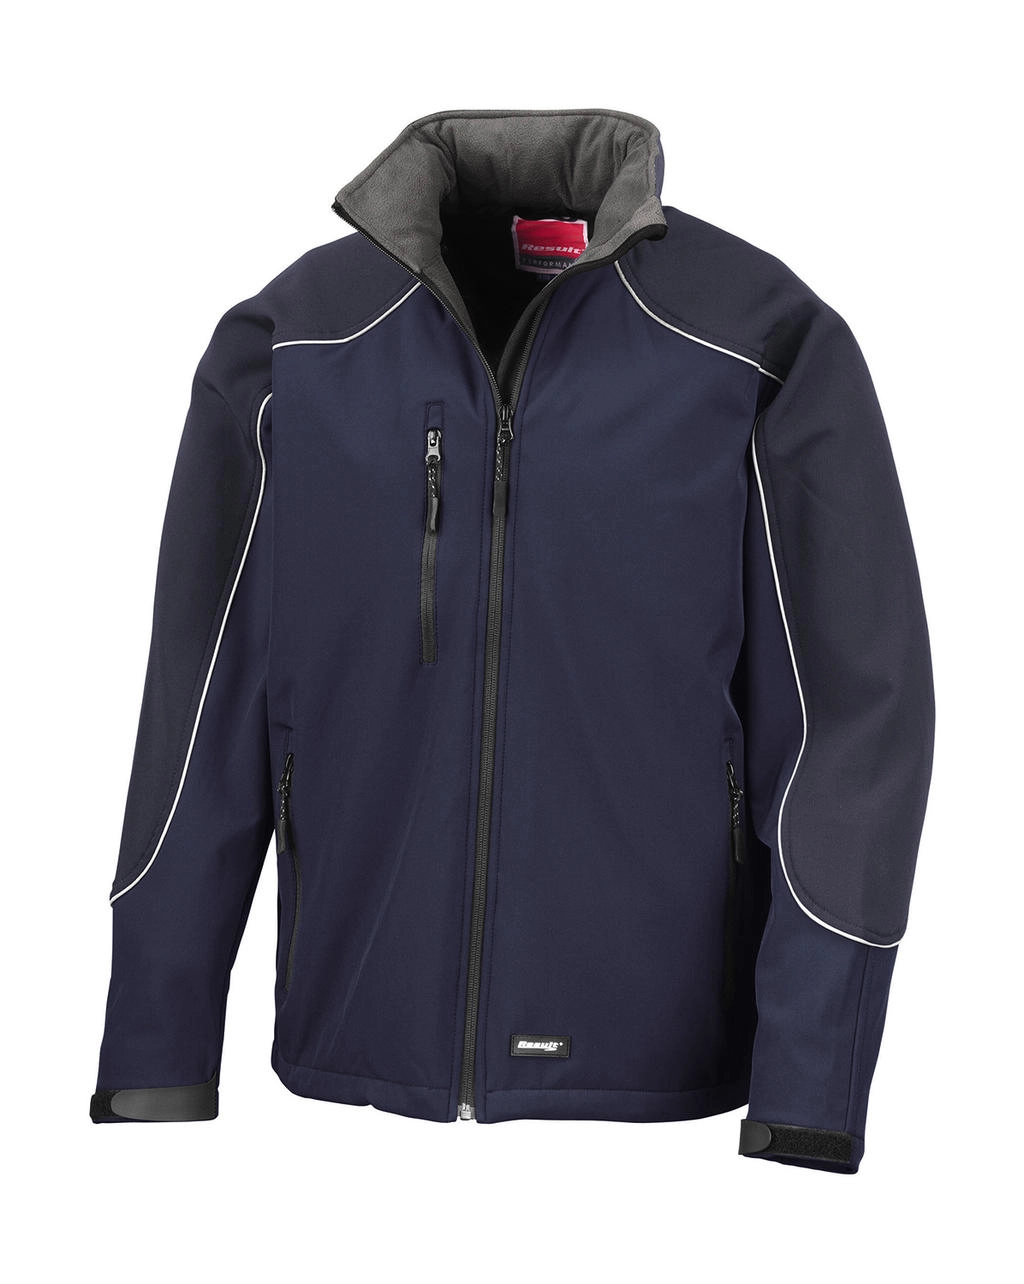 Ice Fell Hooded Softshell Jacket zum Besticken und Bedrucken in der Farbe Navy/Navy mit Ihren Logo, Schriftzug oder Motiv.